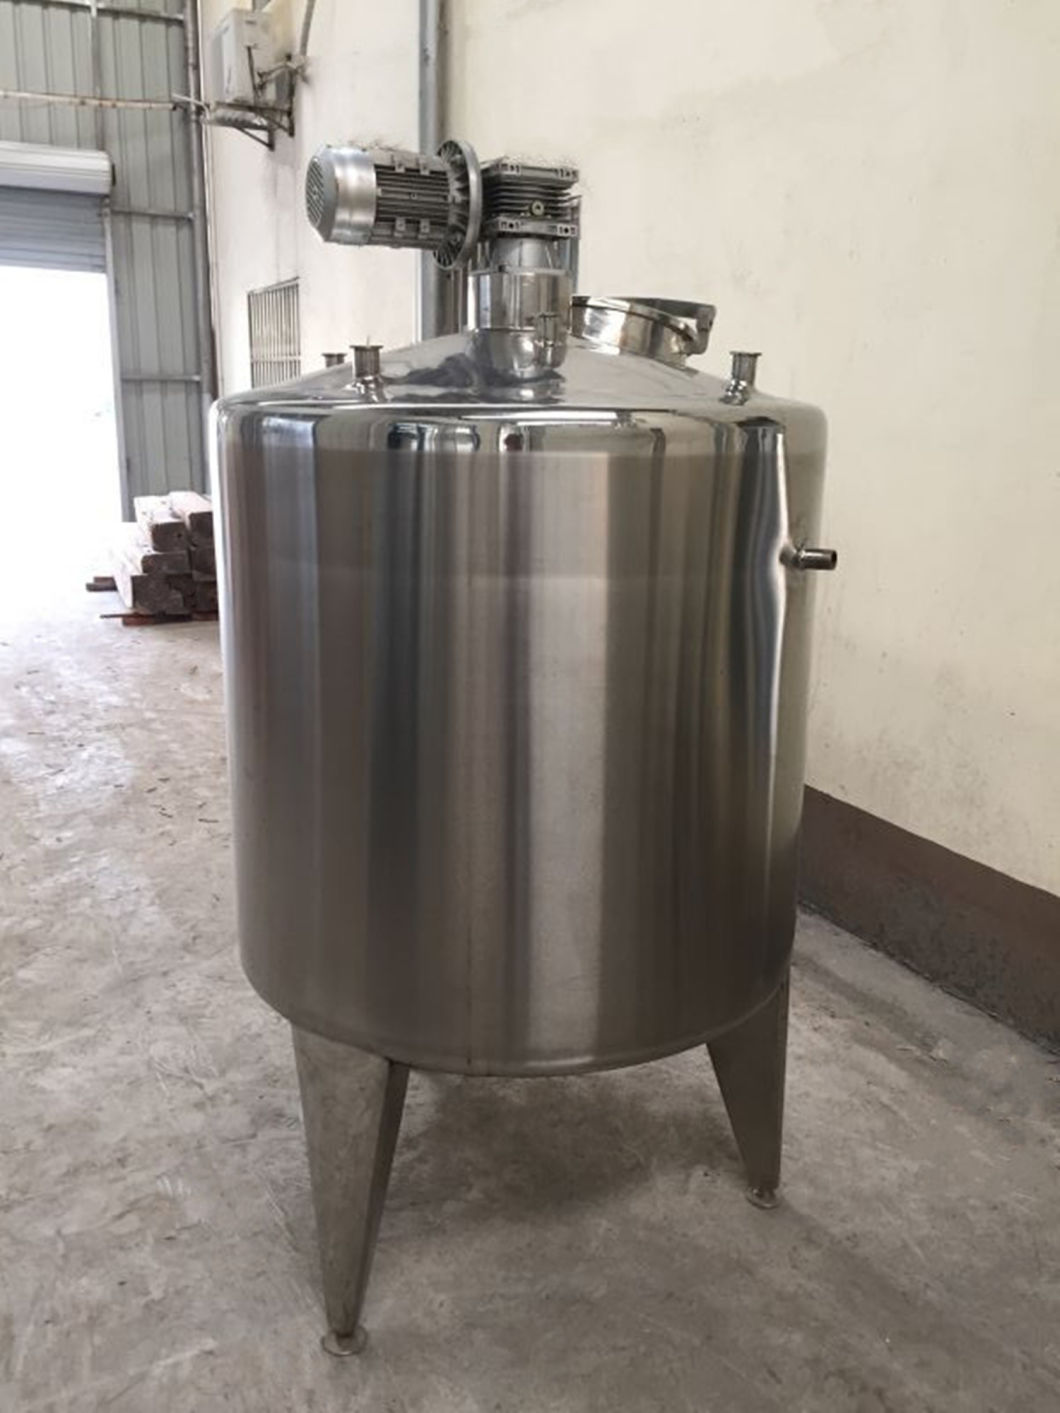 Въвеждане и използване на резервоар за ферментация на кисело мляко